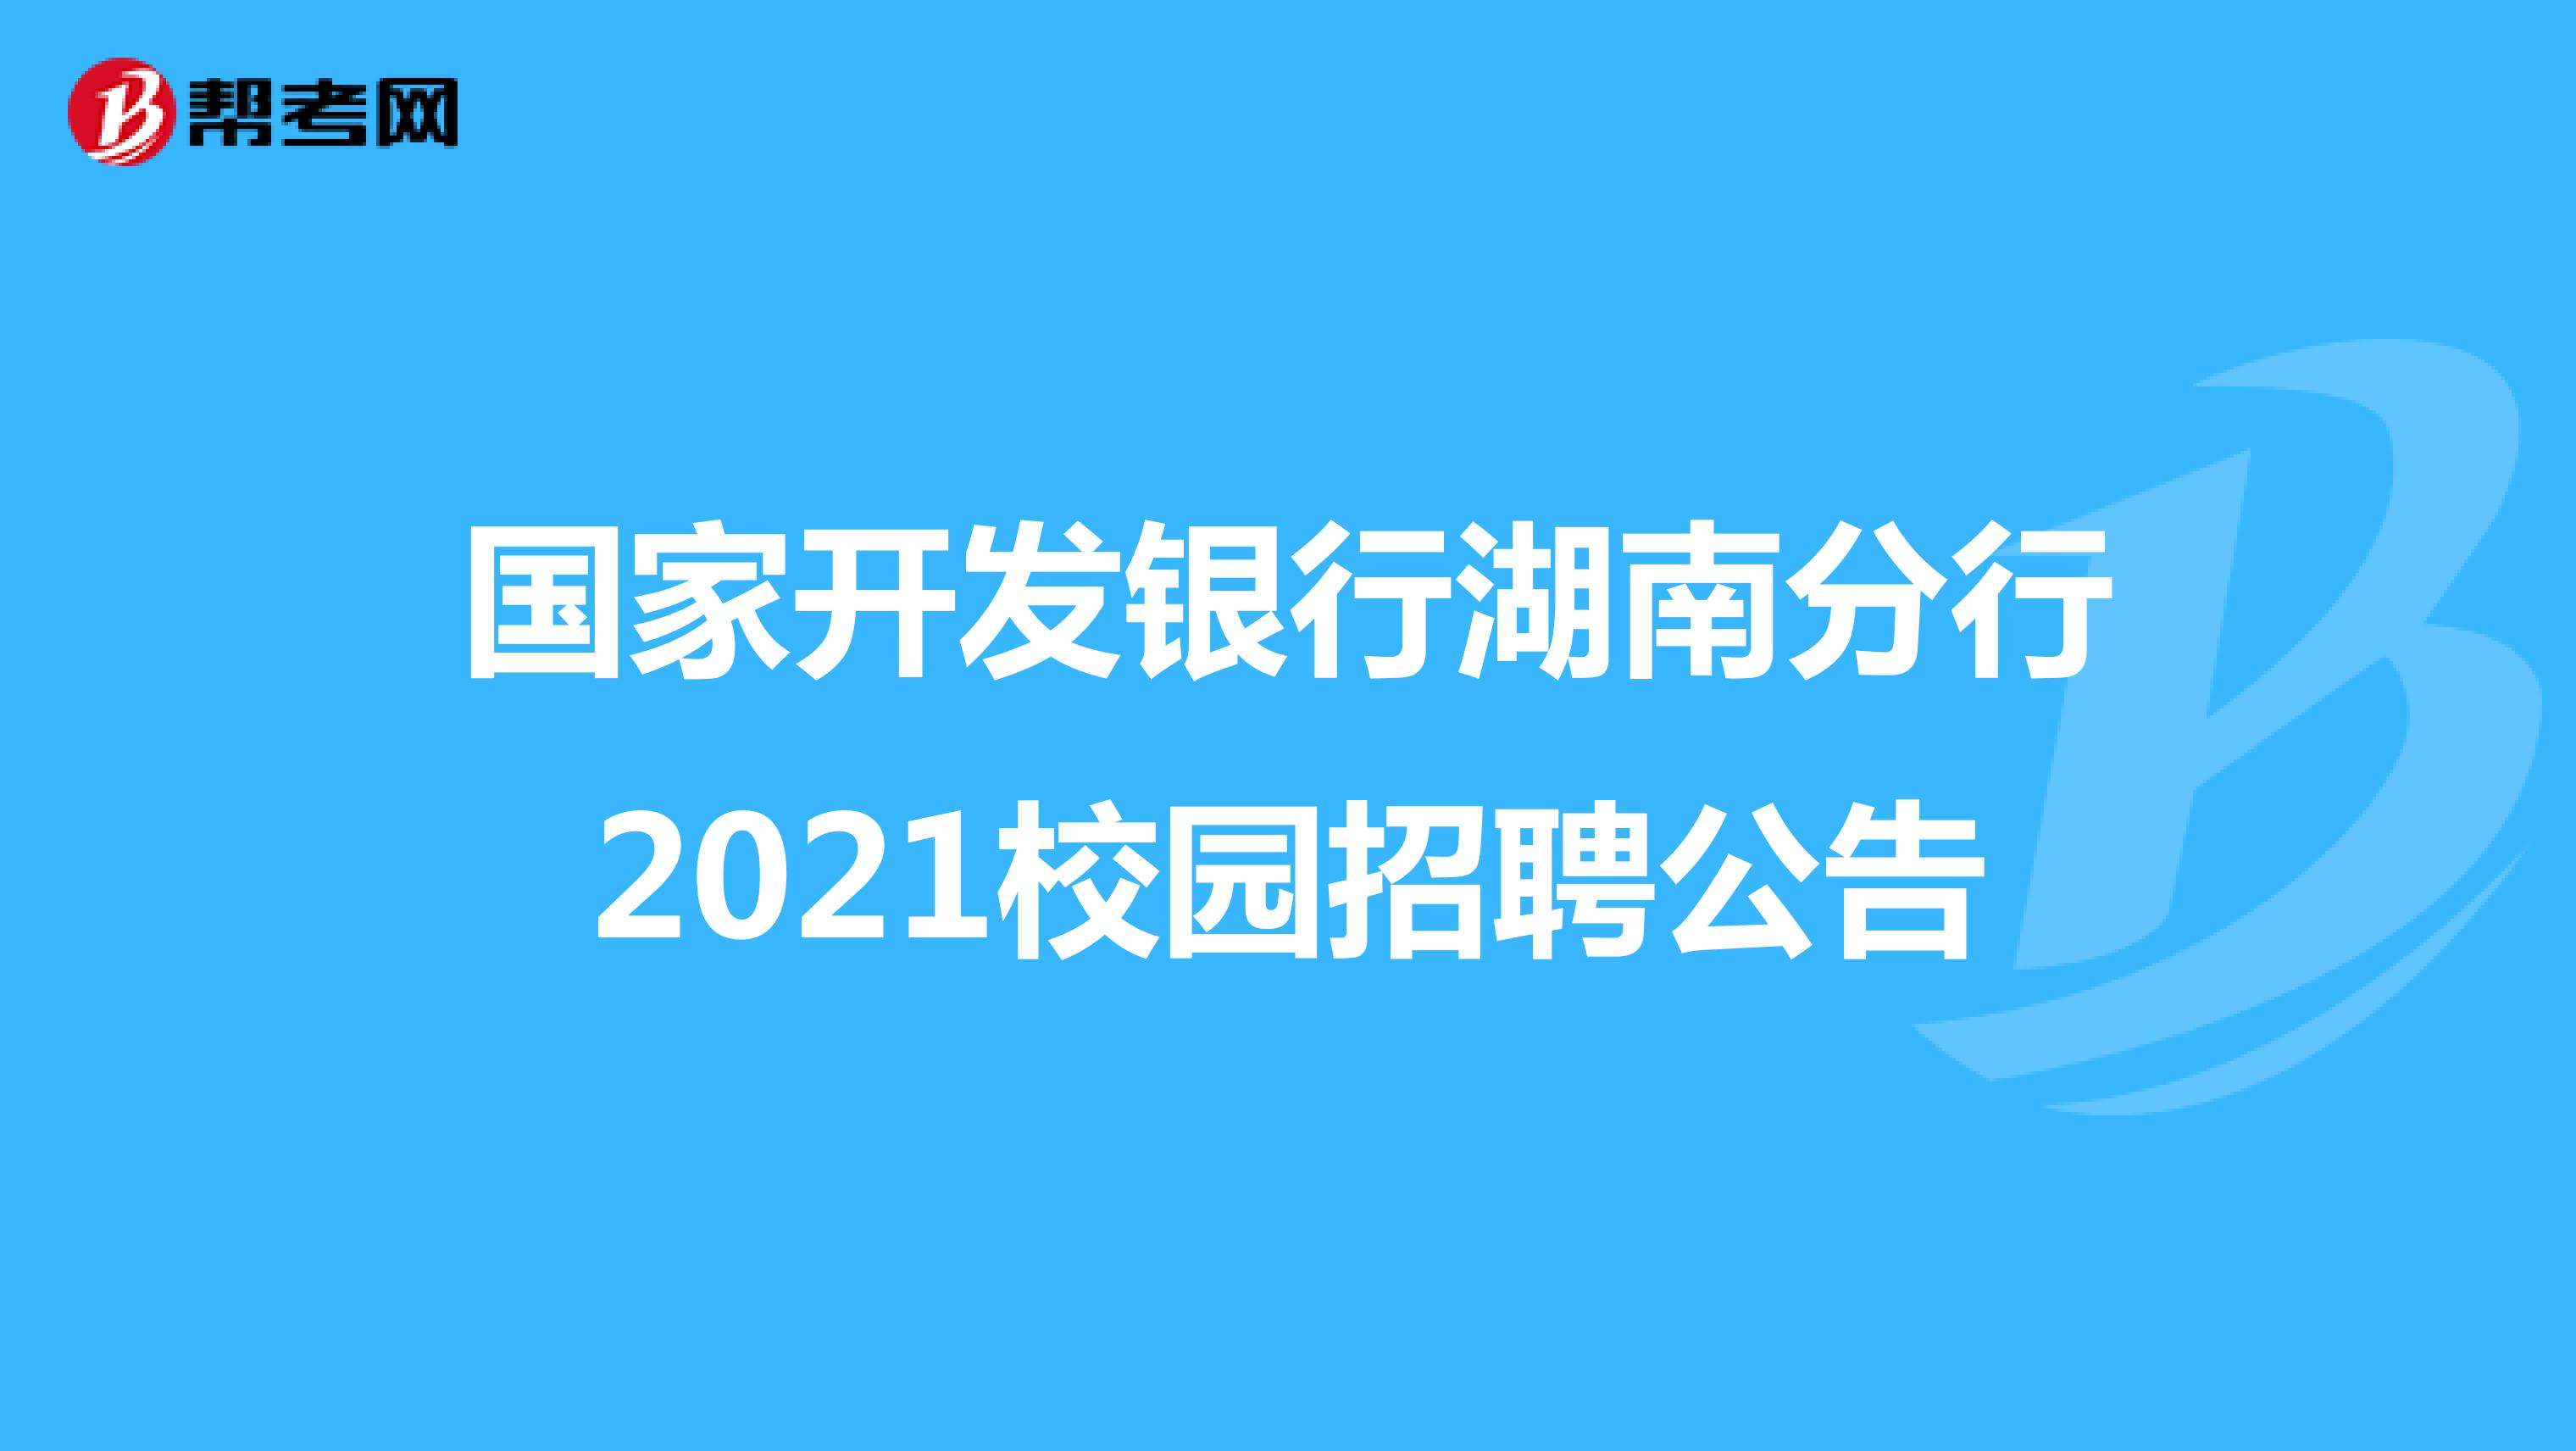 国家开发银行湖南分行2021校园招聘公告